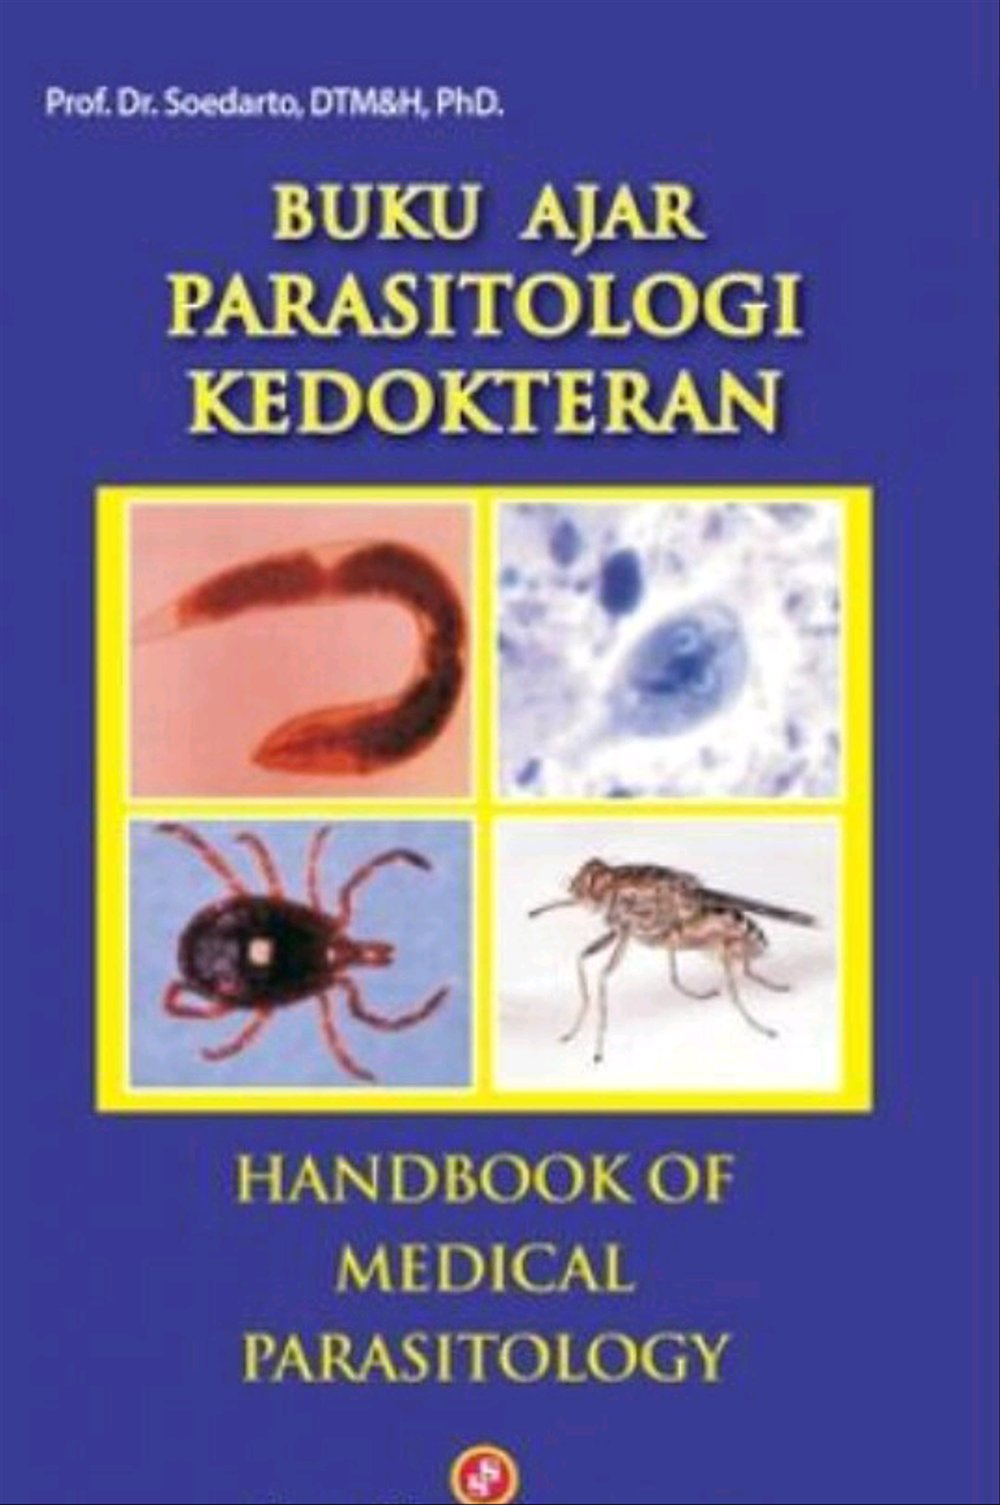 Buku ajar parasitologi kedokteran